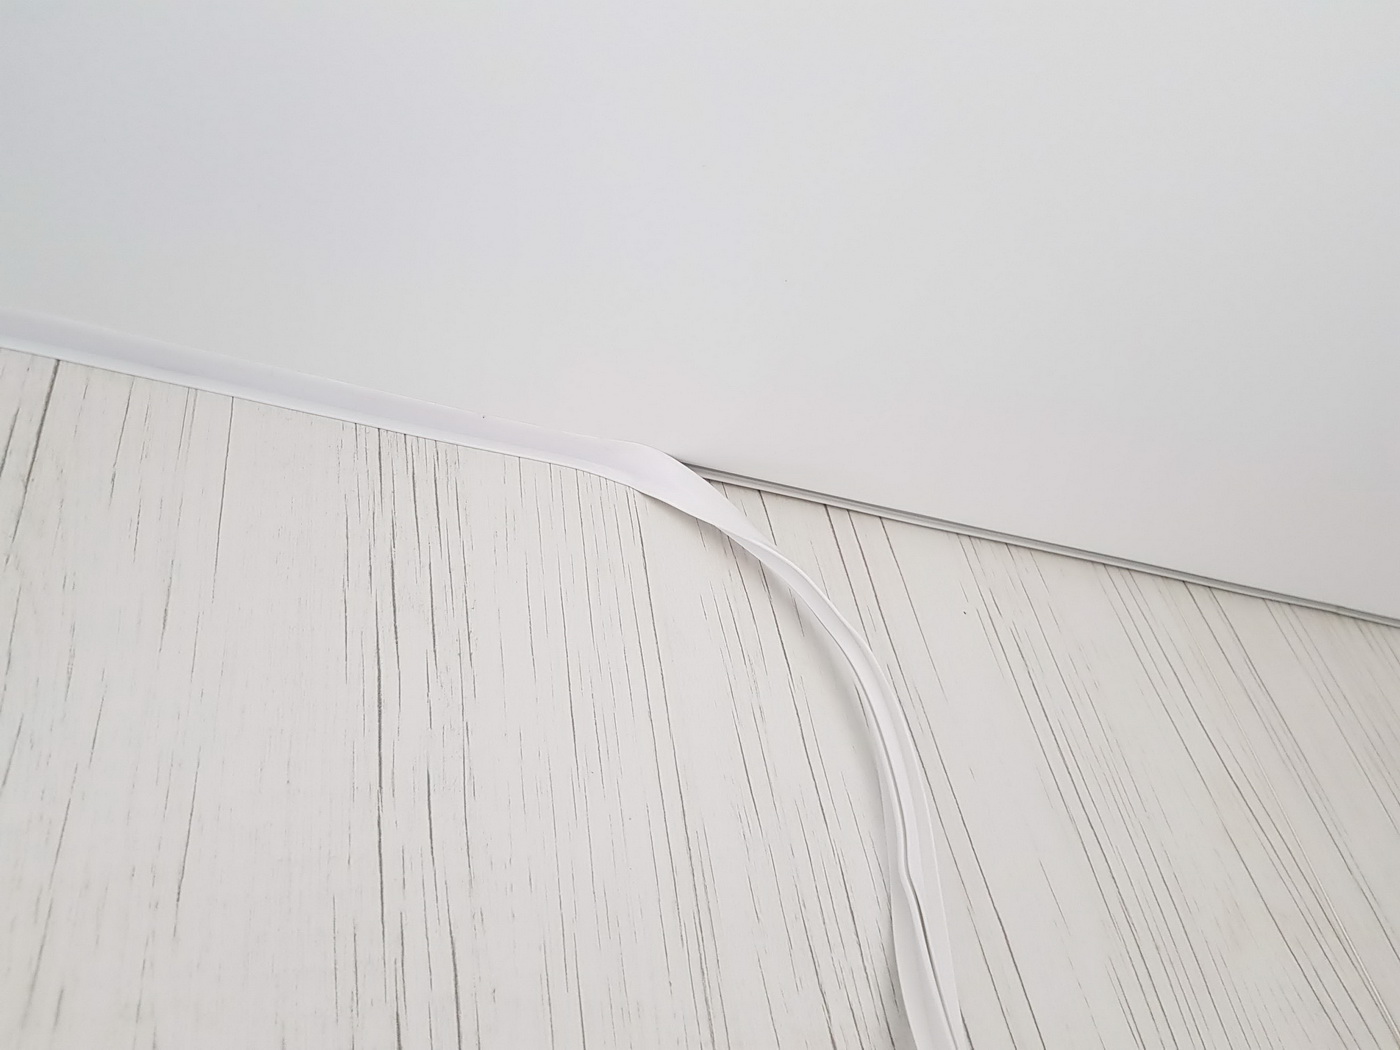 ПВХ-натяжной потолок с демонстрацией маскировочной ленты